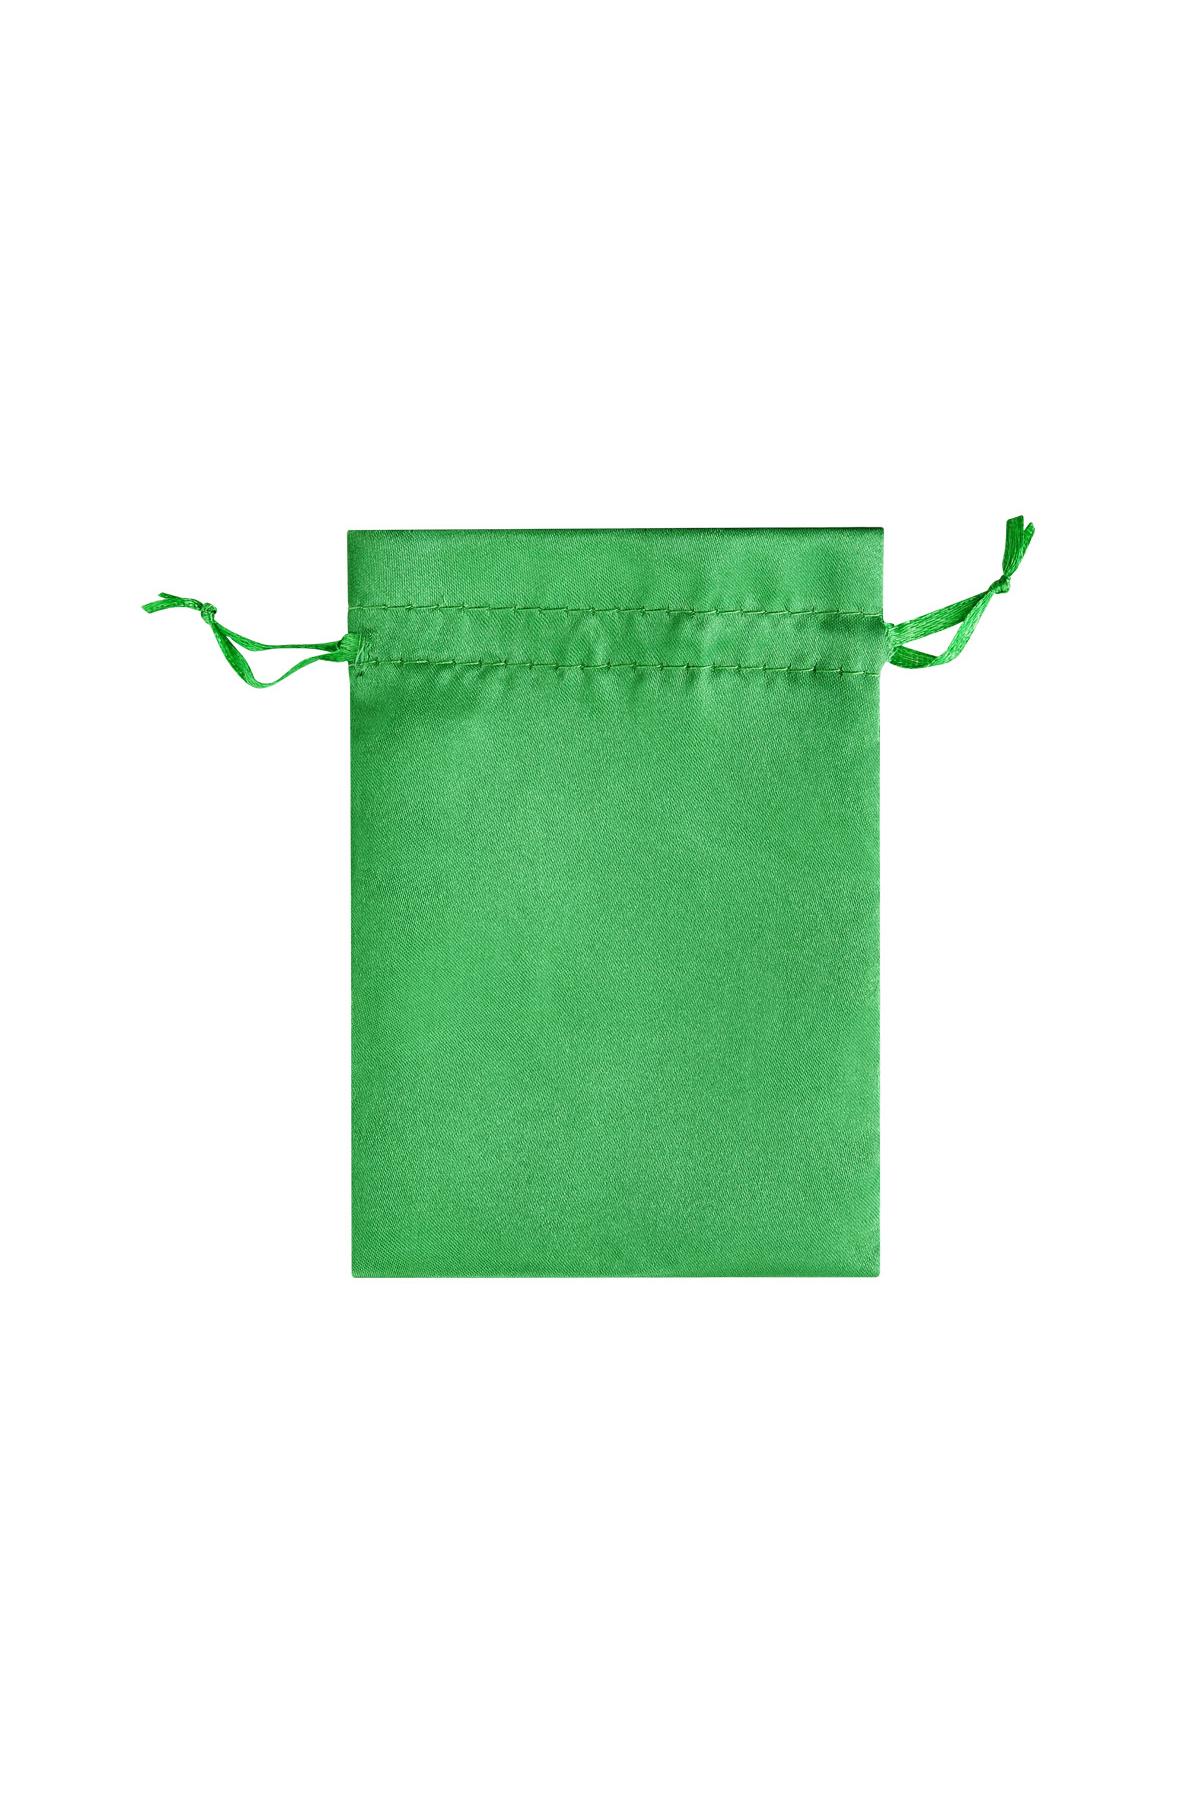 Schmuckbeutel Satin klein - grün Polyester 